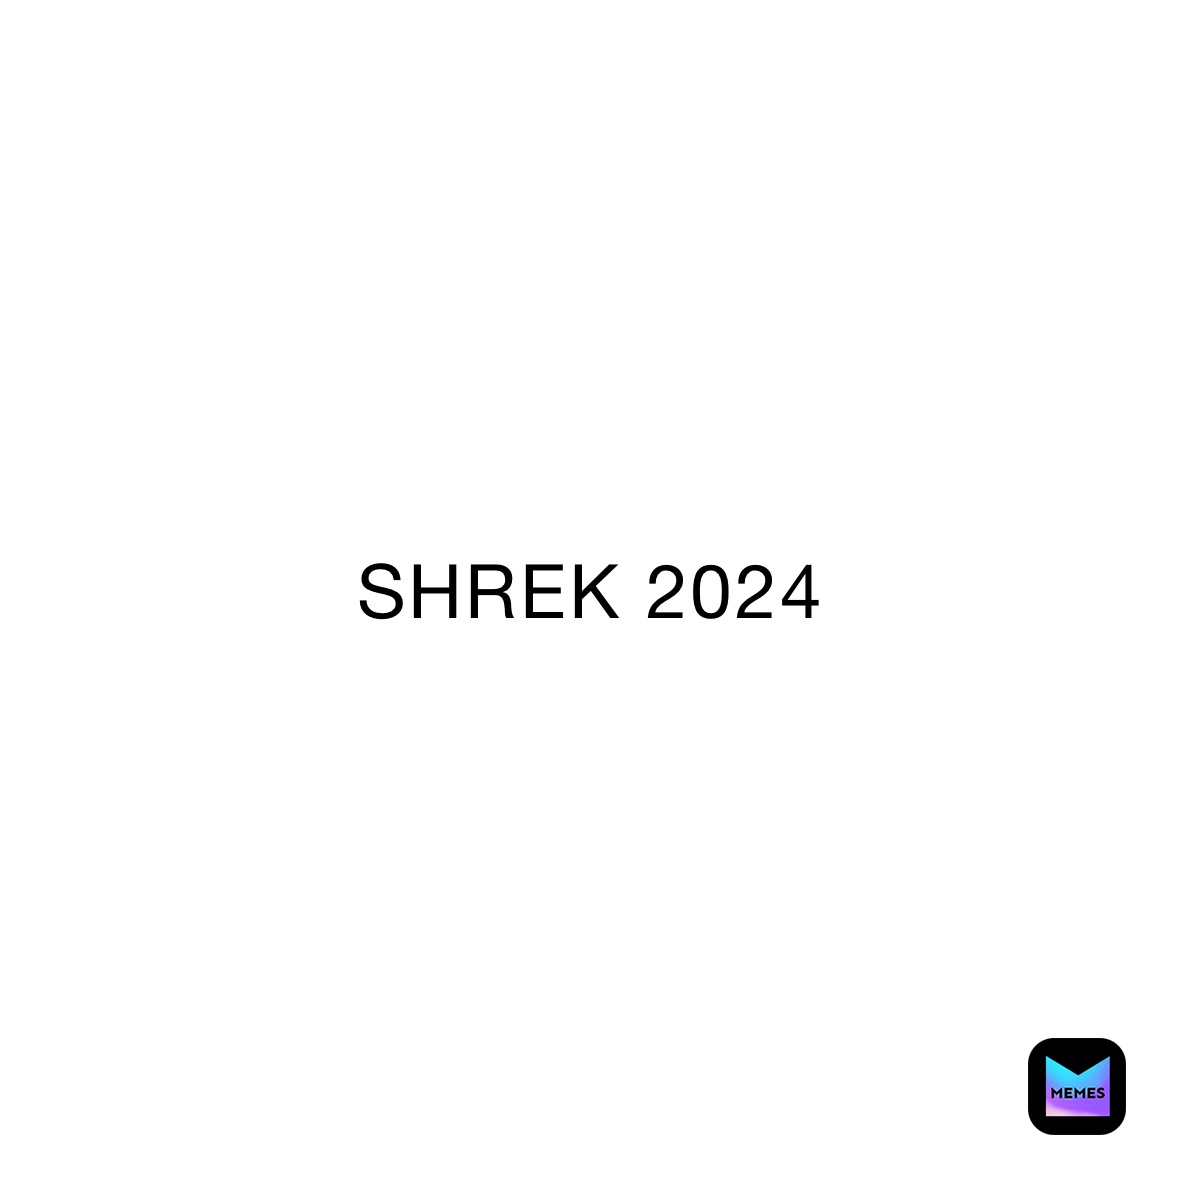 SHREK 2024